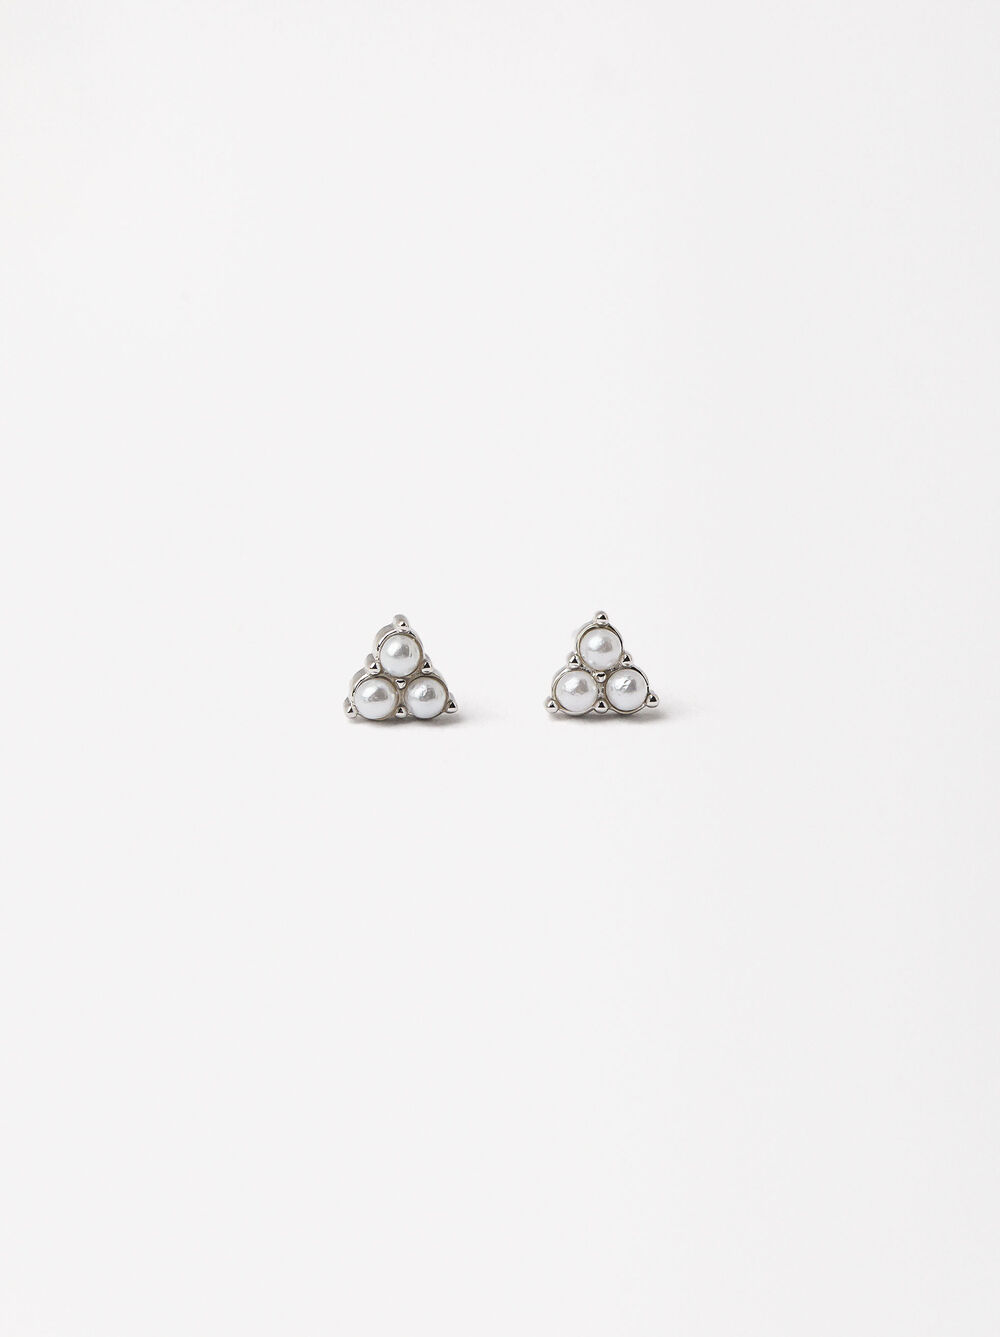 Dreiecks-Ohrringe - 925er Sterlingsilber